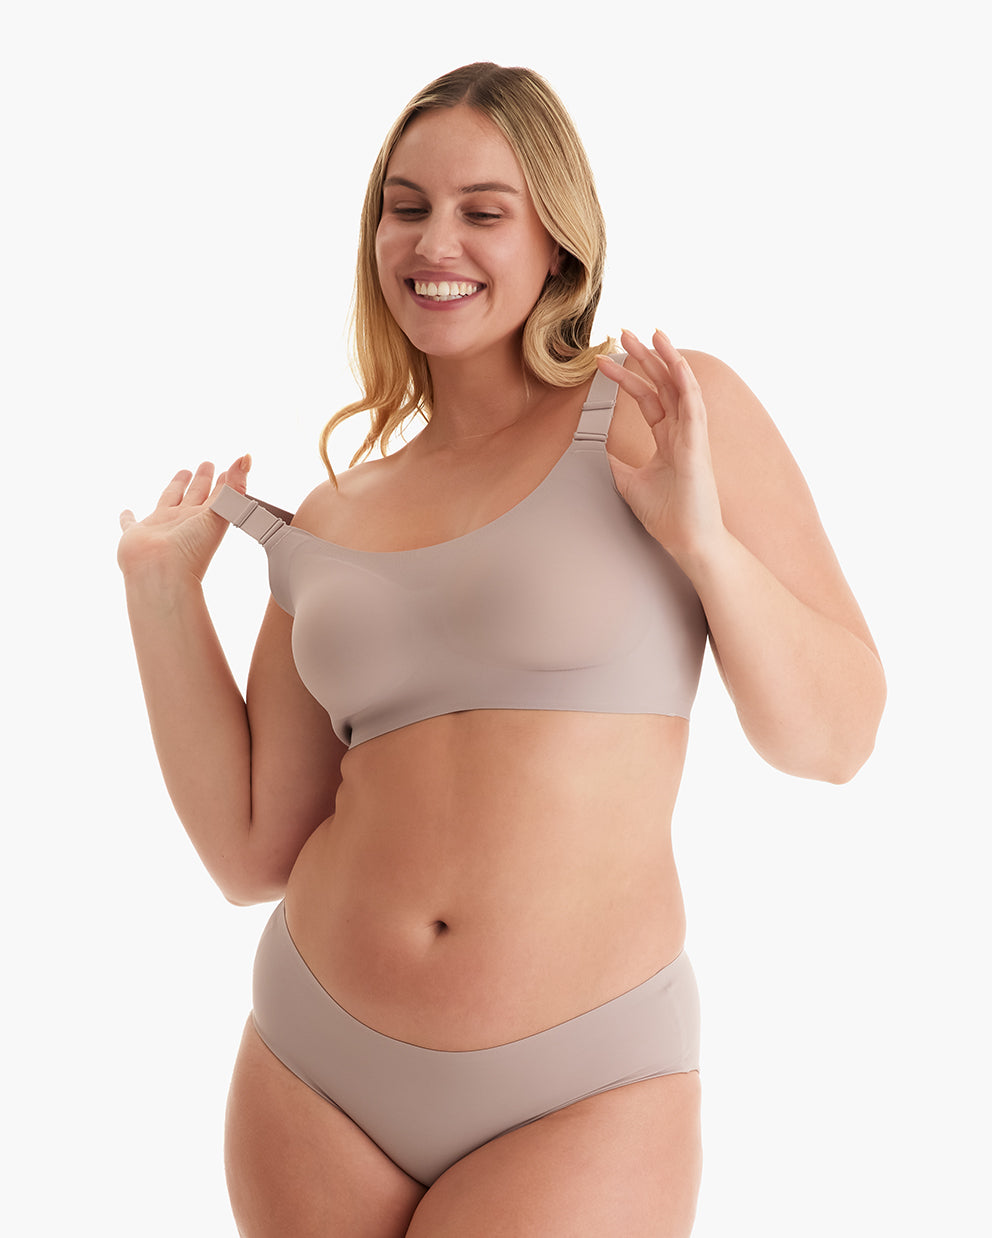 Cuoff Bras for Women Underwear Women Underbust Postpartum Body